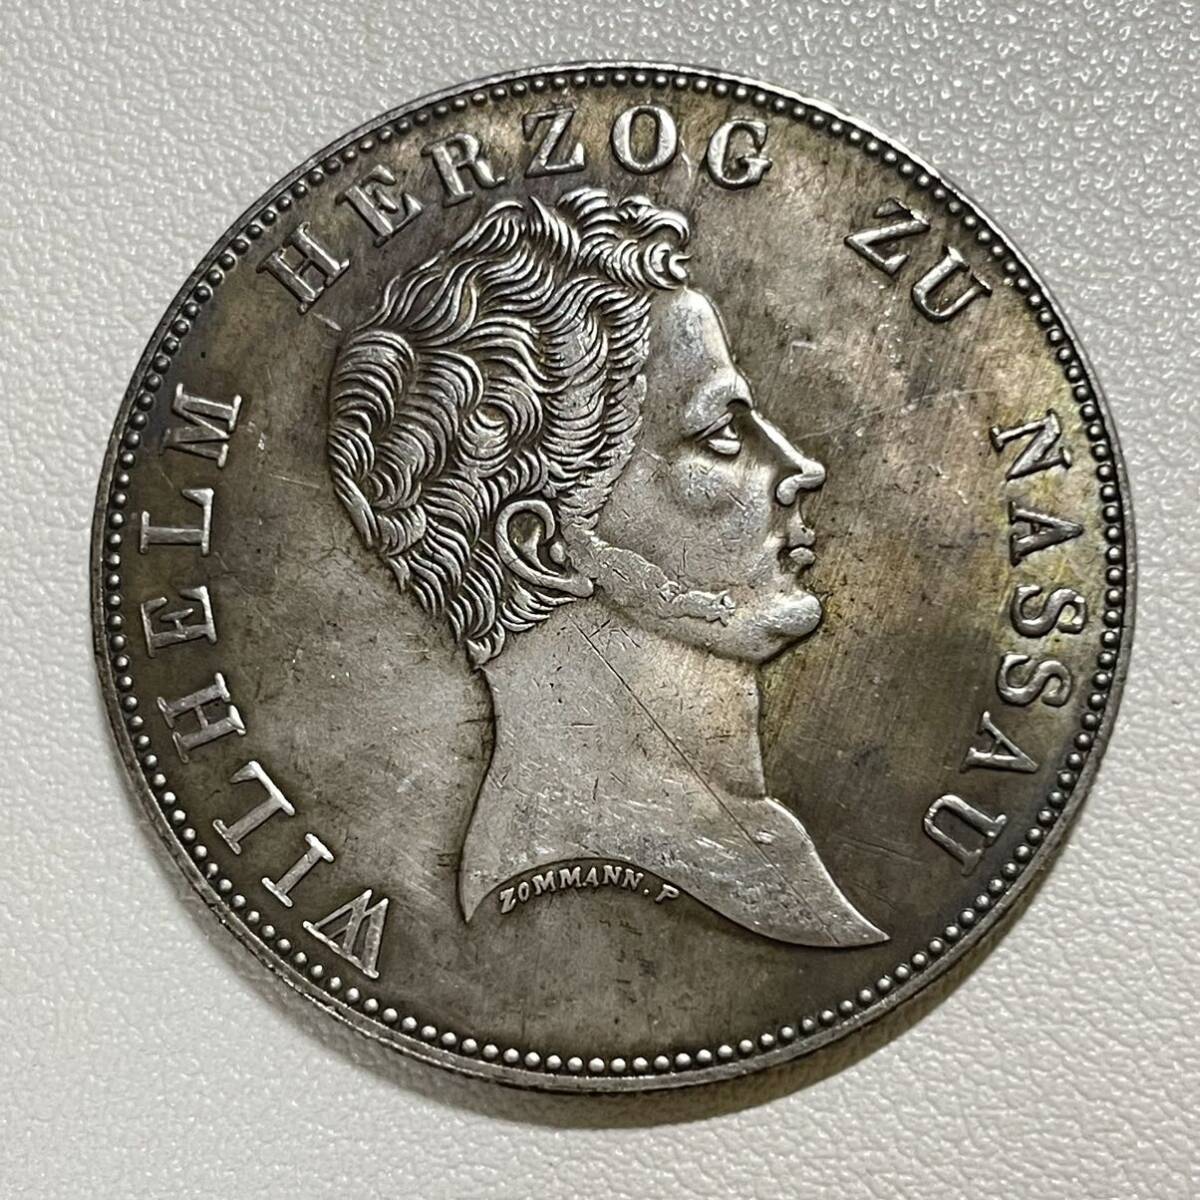 ドイツ 硬貨 古銭 ウィリアム公 1836年 ドイツ領 ナッソー公爵 ナッソー公国紋章 クラウン 獅子 コイン 重22.46g_画像2